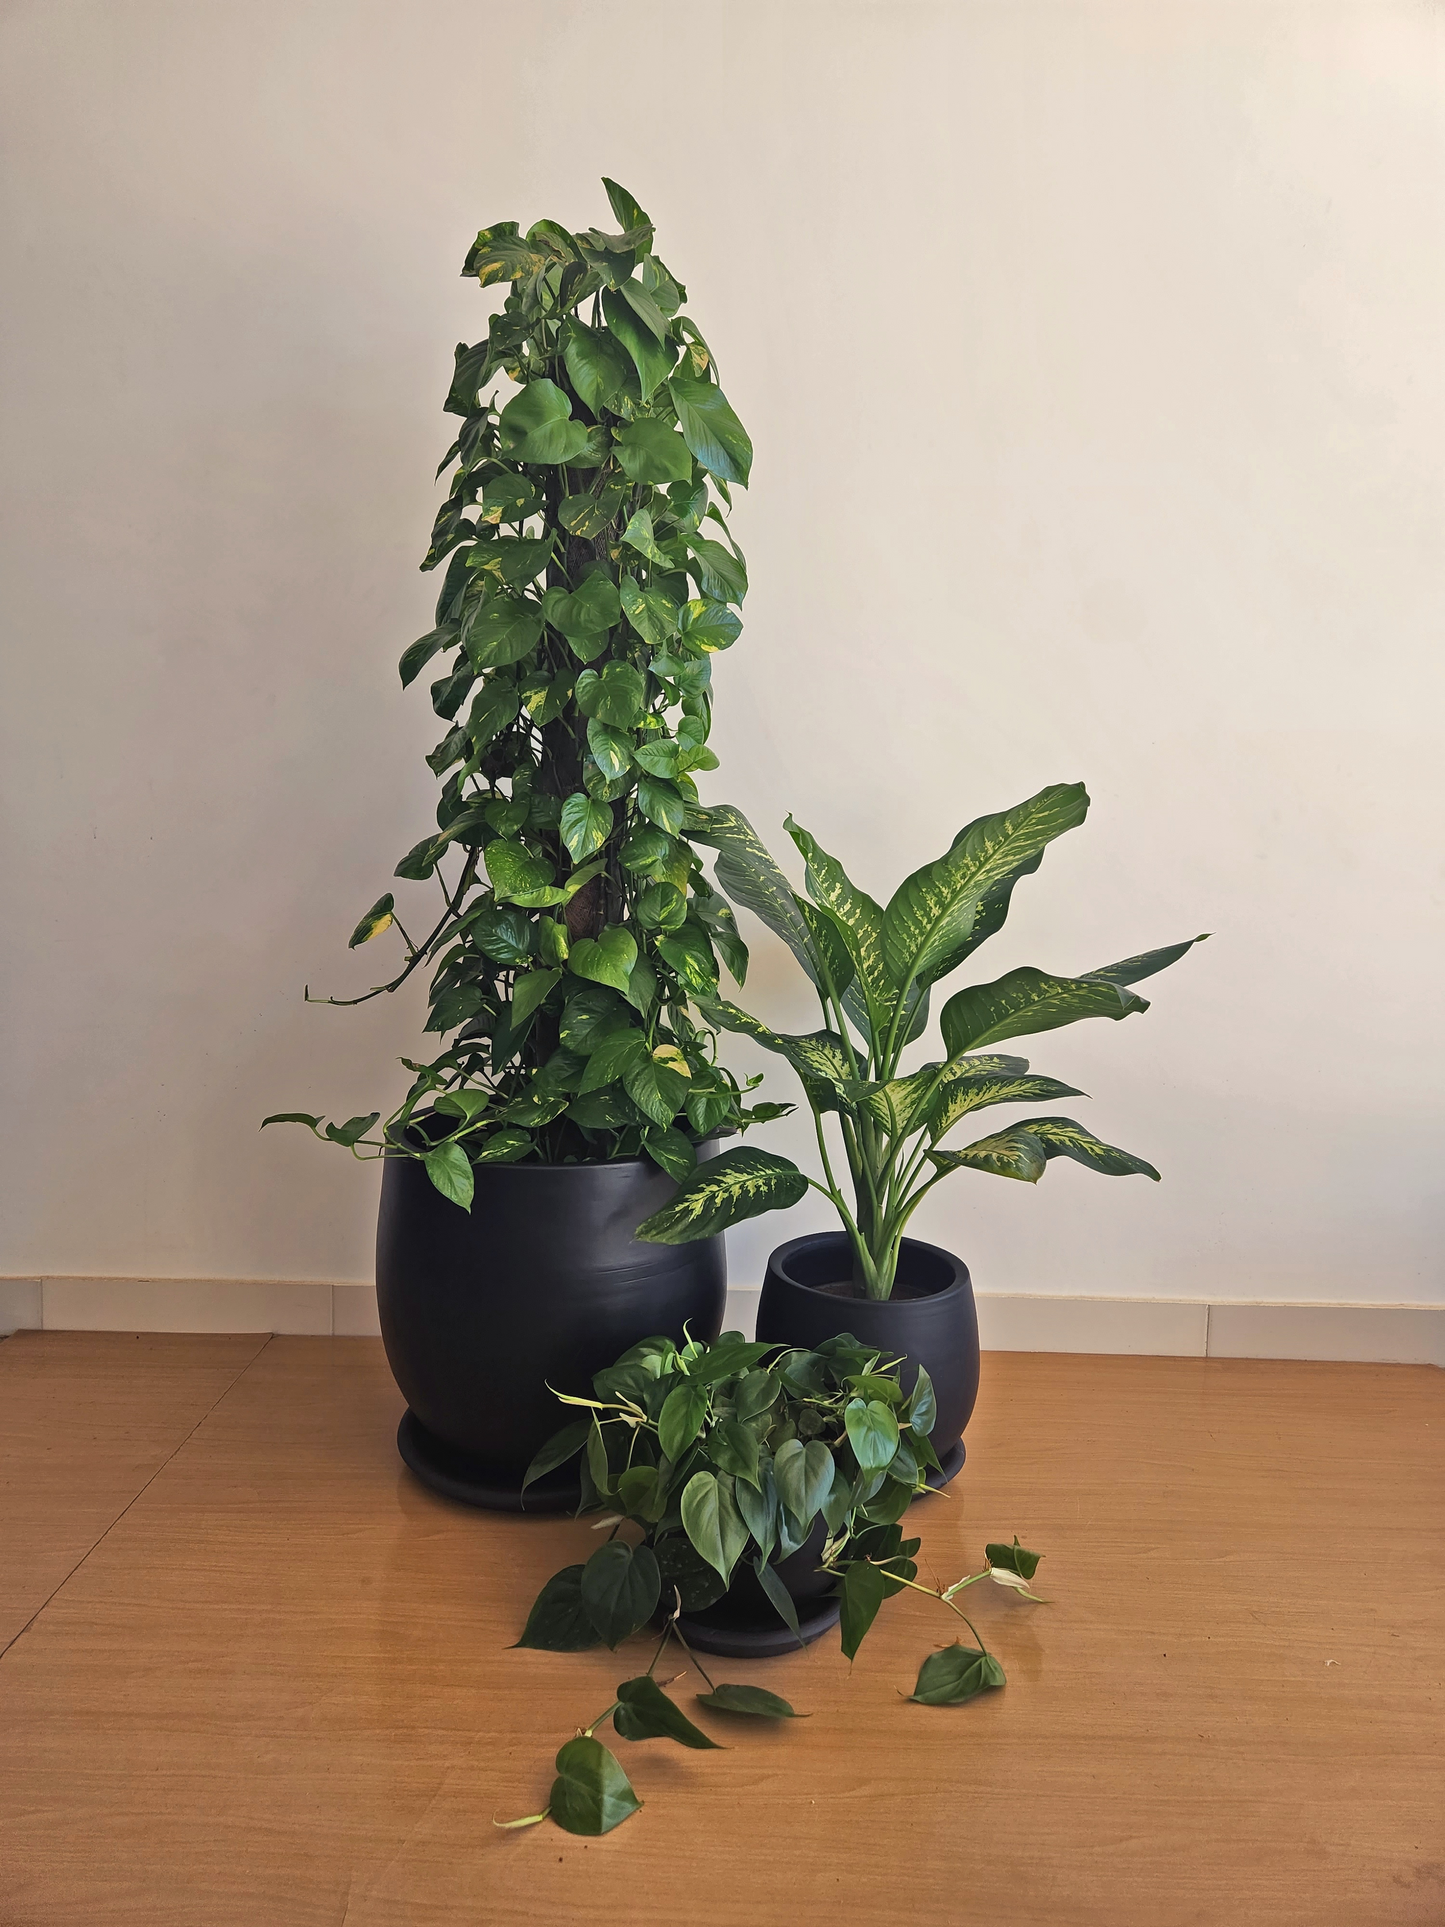 Large Low Light Plant Trios - Black Plastic Pots